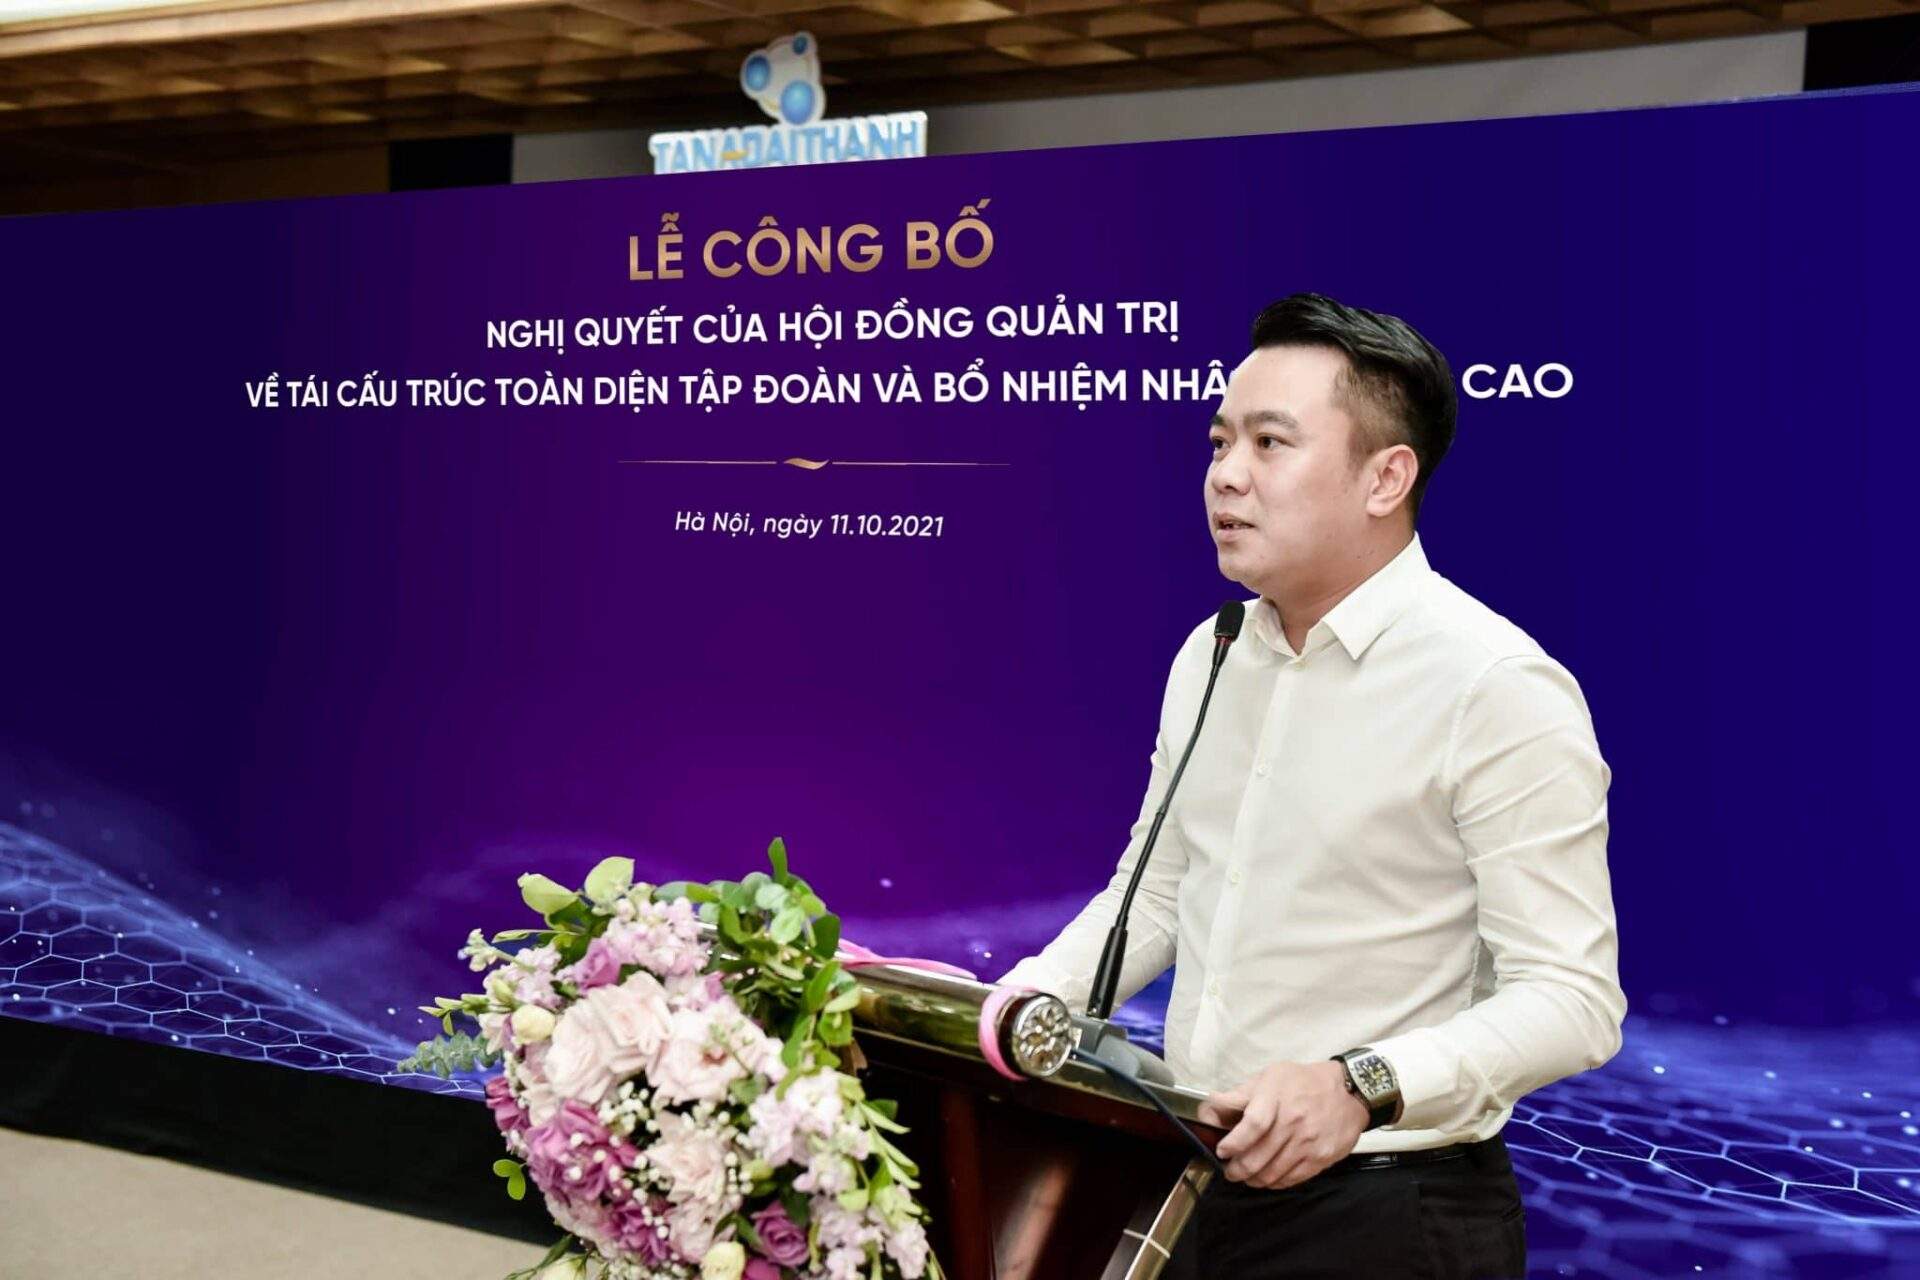 Ông Nguyễn Duy Chính – Tổng giám đốc Tân Á Đại Thành phát biểu tại lễ công bố Nghị quyết về tái cấu trúc toàn diện Tập đoàn.